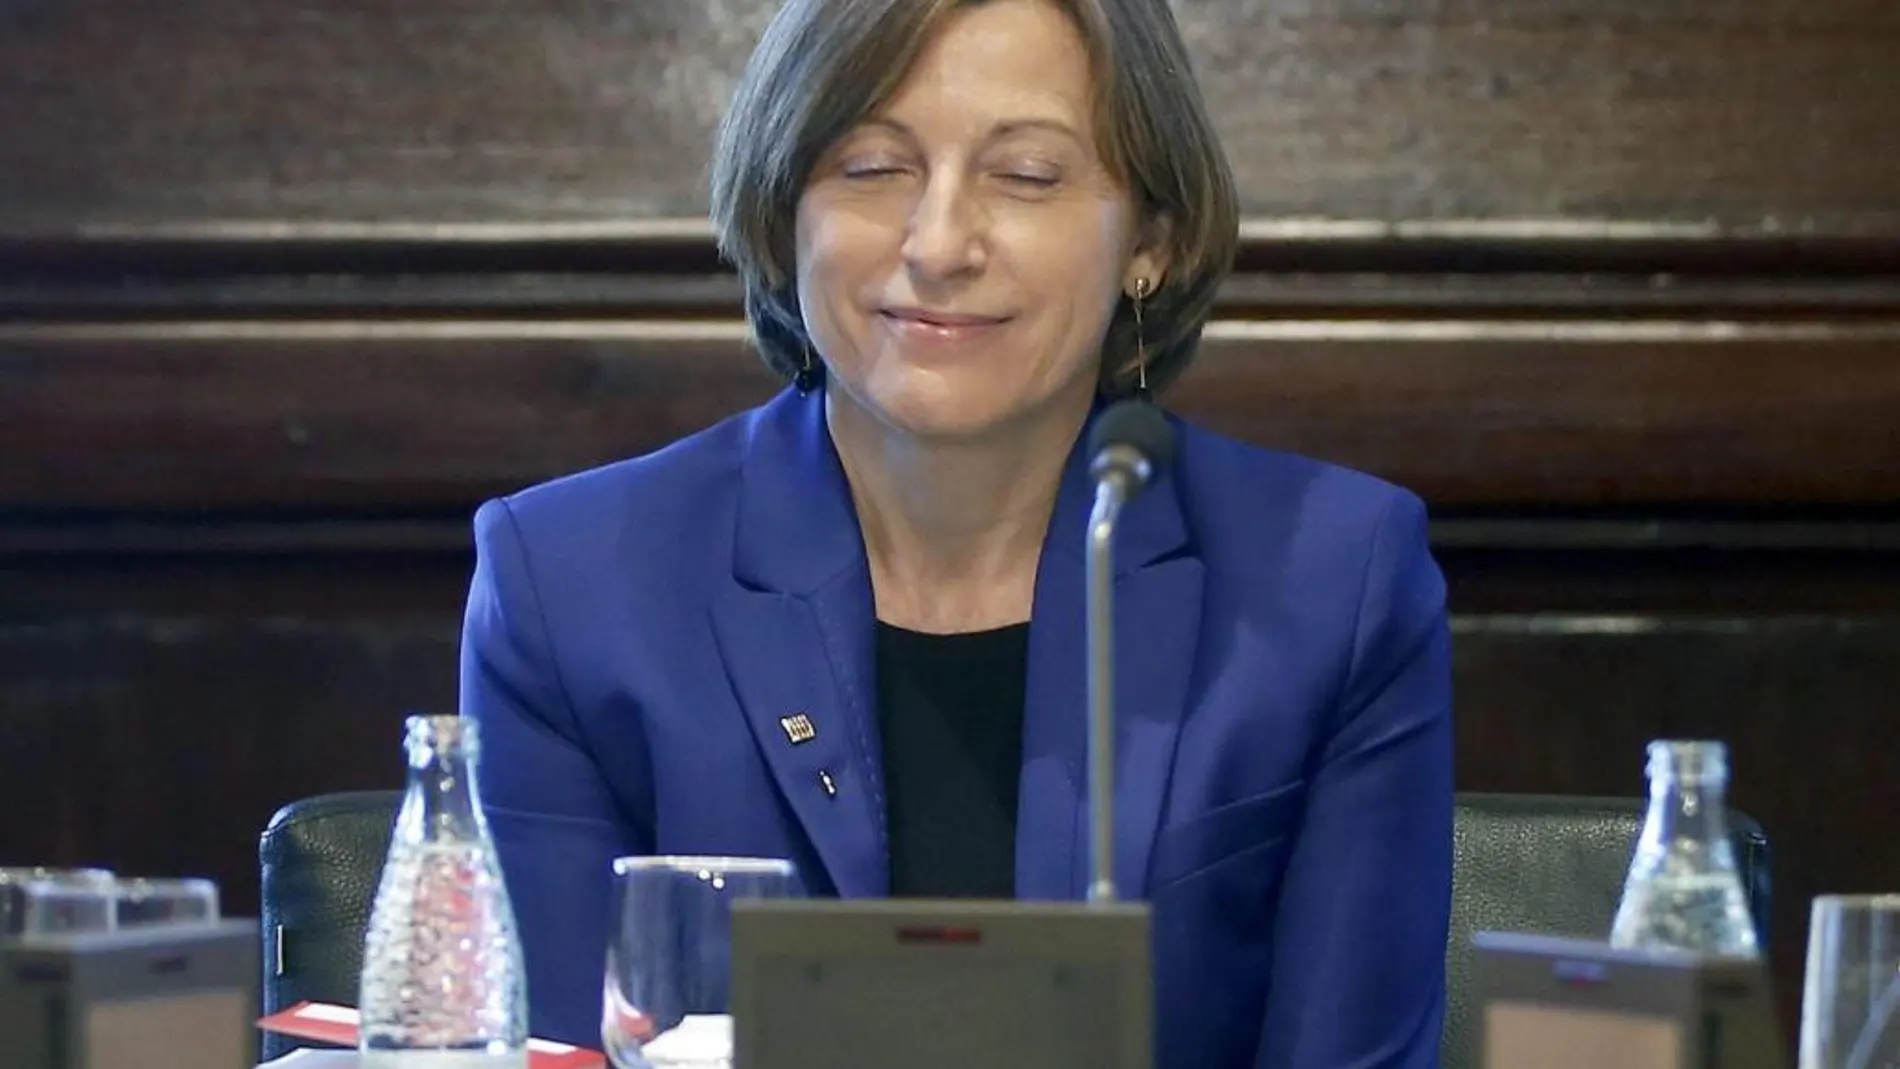 La presidenta del Parlament, Carme Forcadell, titula su artículo "Defendiendo la libertad en Cataluña"